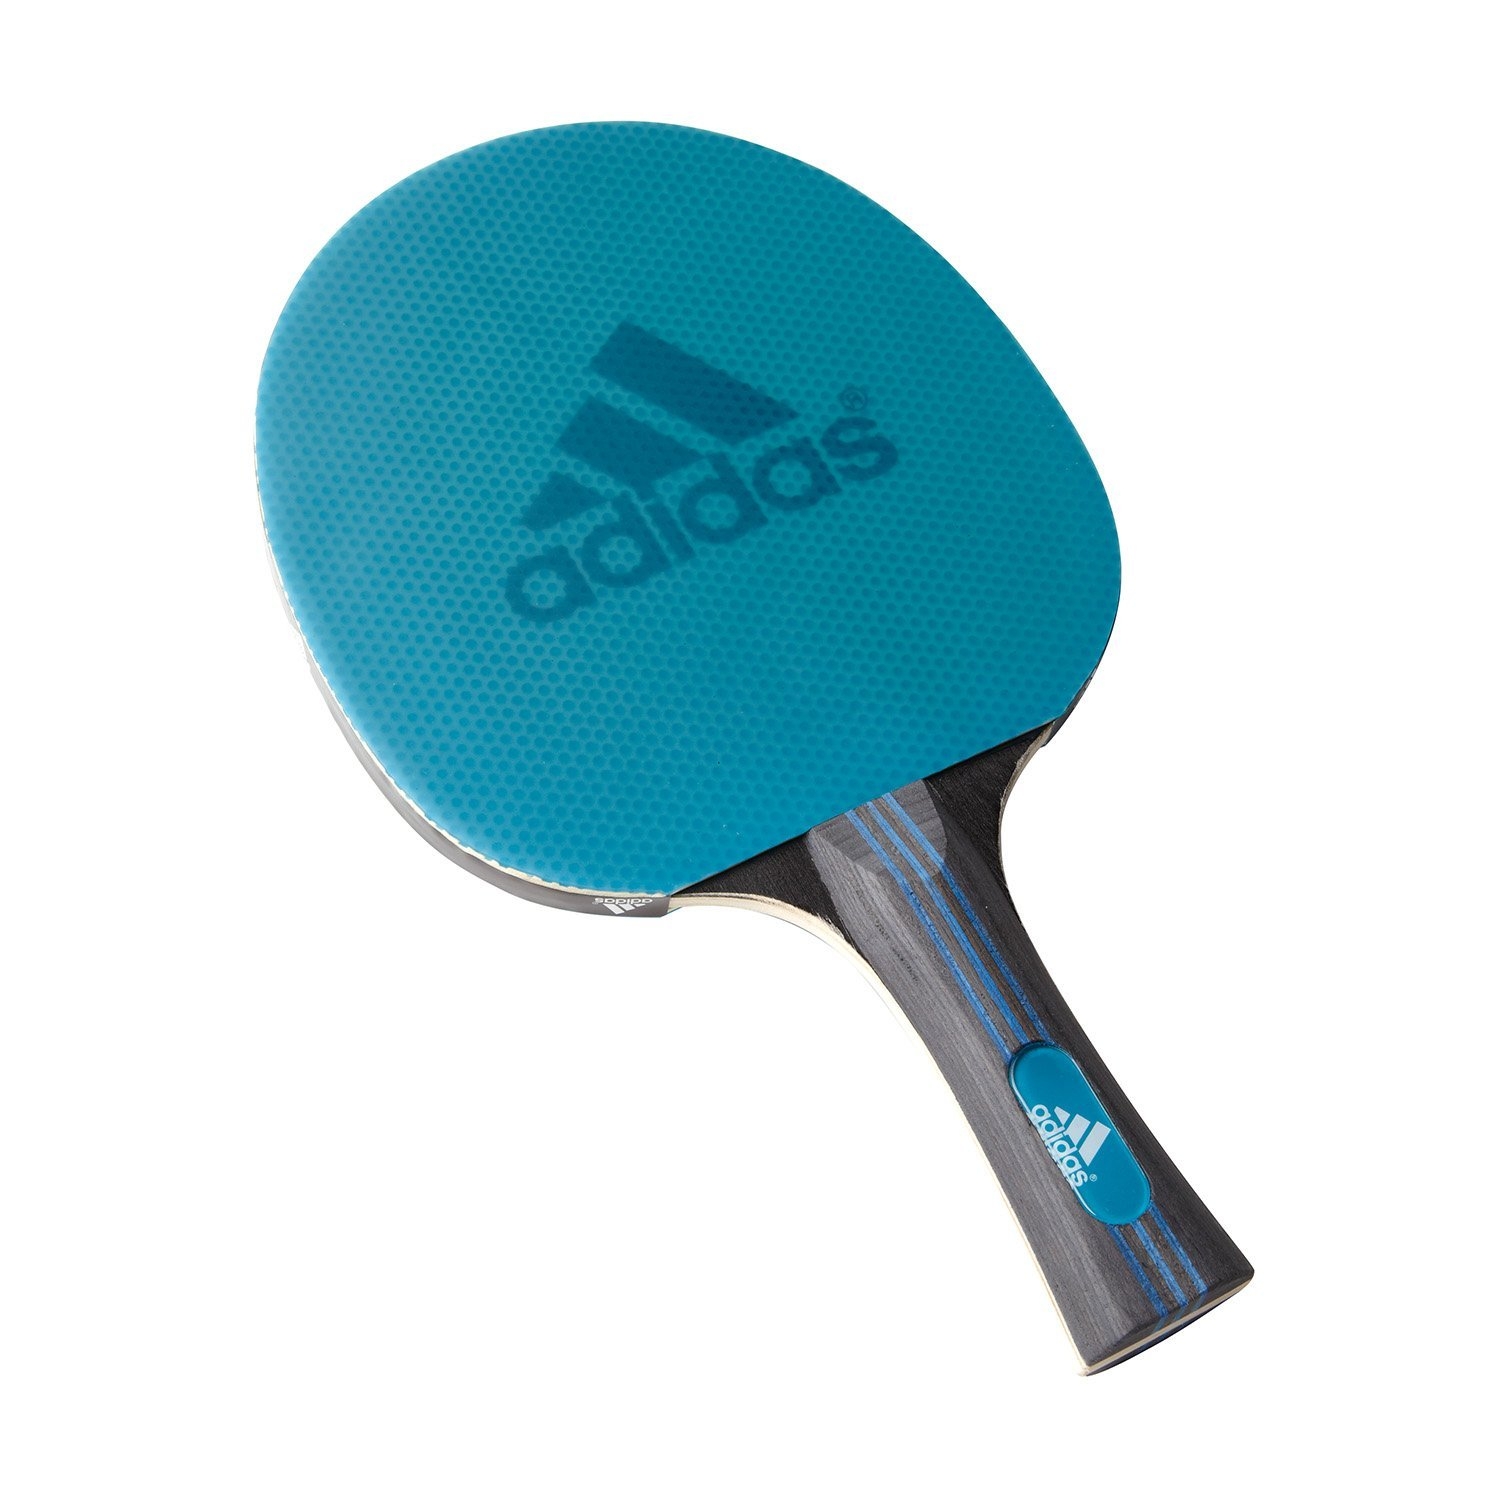 Ракетка для настольного тенниса цена. Adidas Laser ракетка для настольного тенниса. Ракетка адидас для настольного тенниса. Ракетка адидас для настольного тенниса Vigor 120. Ракетка для пинг понга adidas.